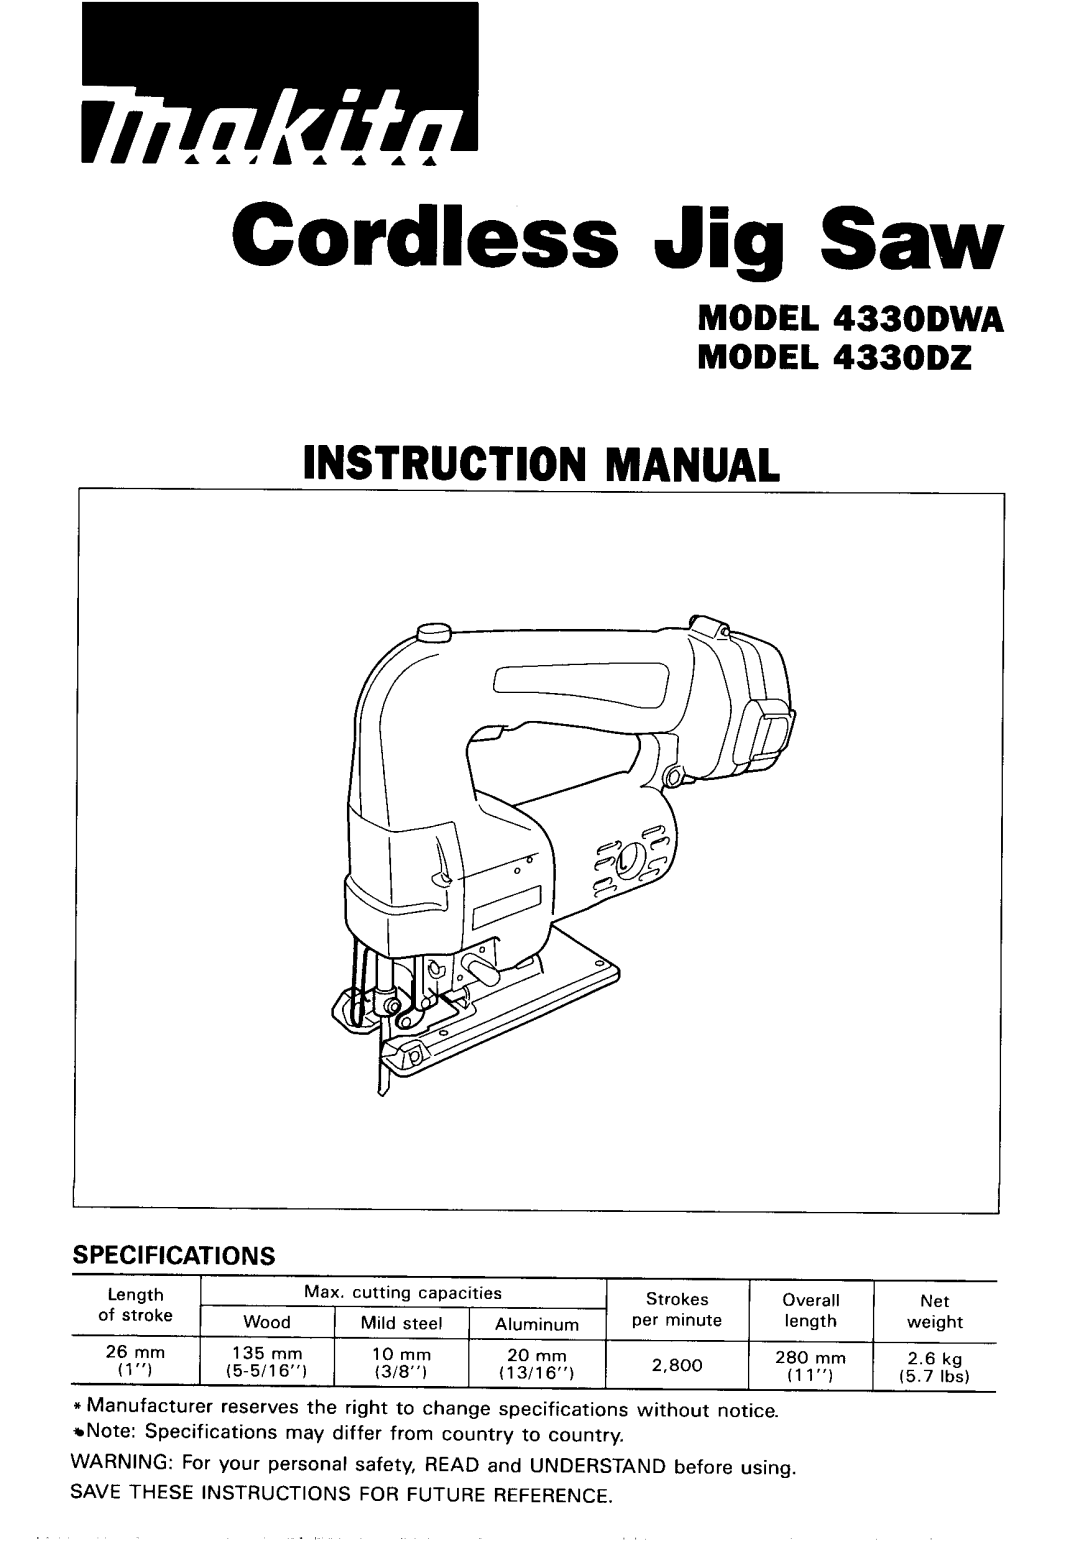 Makita instruction manual Cordless Jig Saw, Instruction Manual, MODEL 433ODWA MODEL 4330D2 